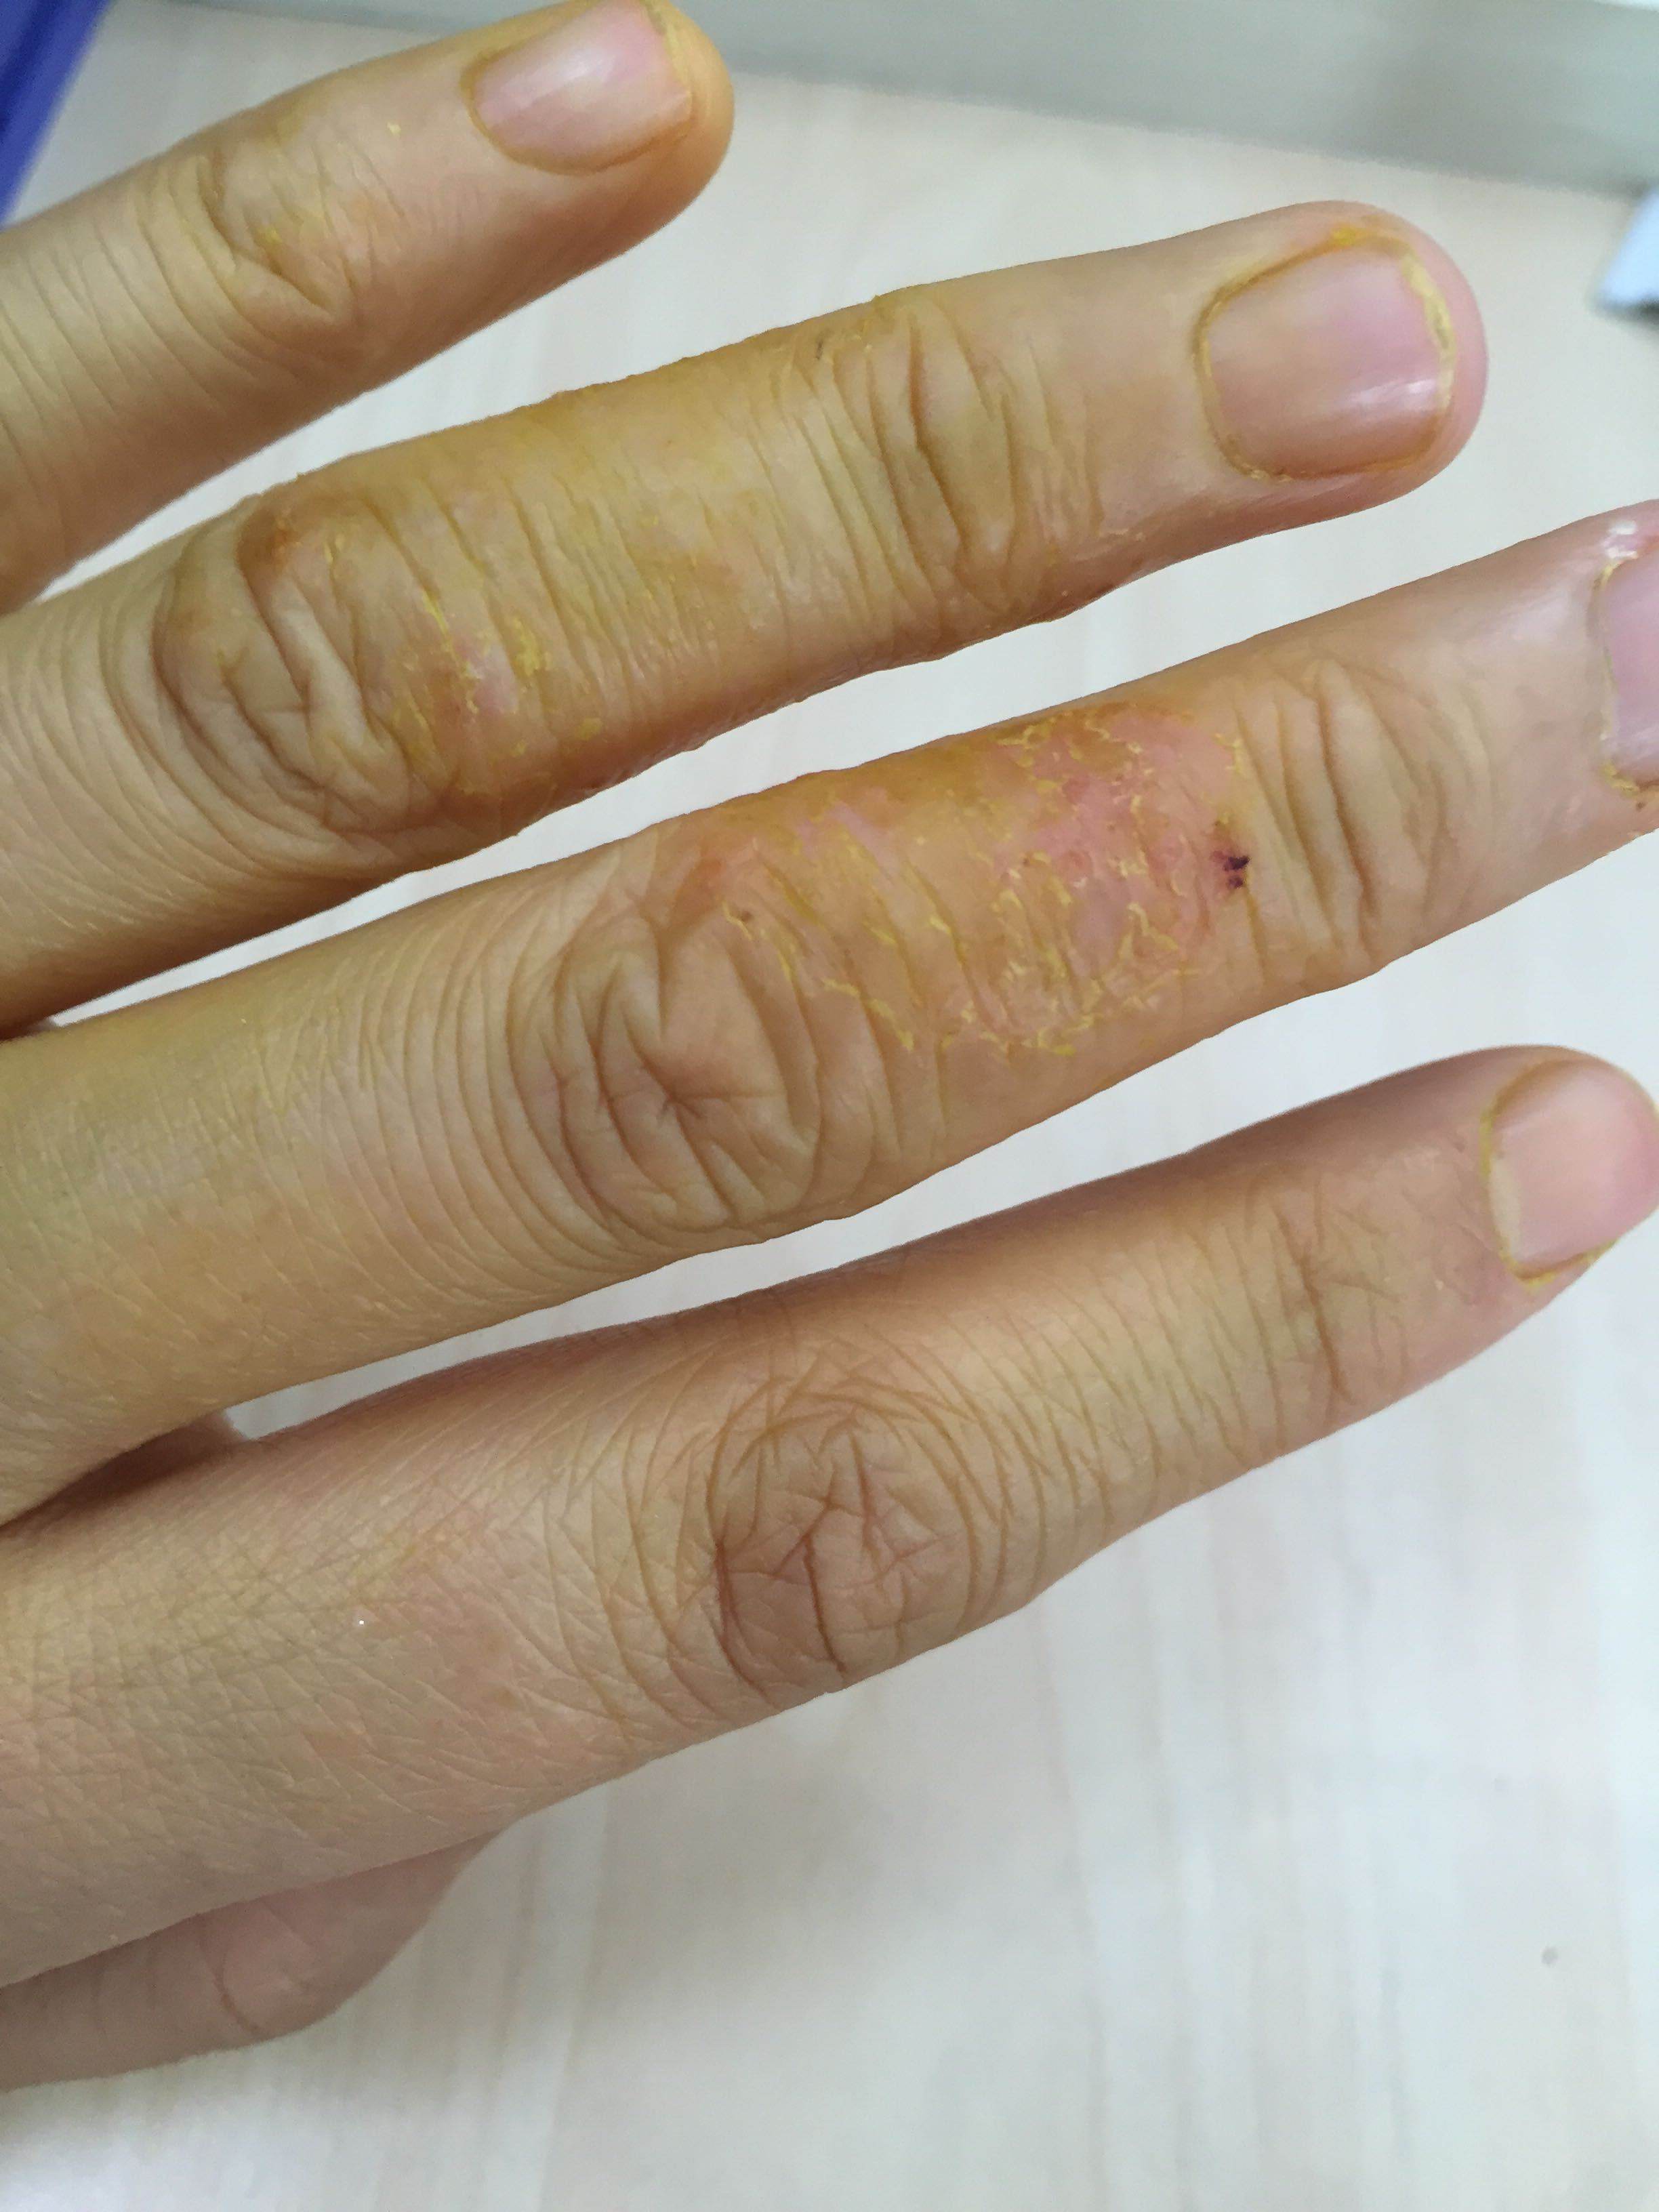 手指关节部位皮肤增厚,脱皮,是什么原因?